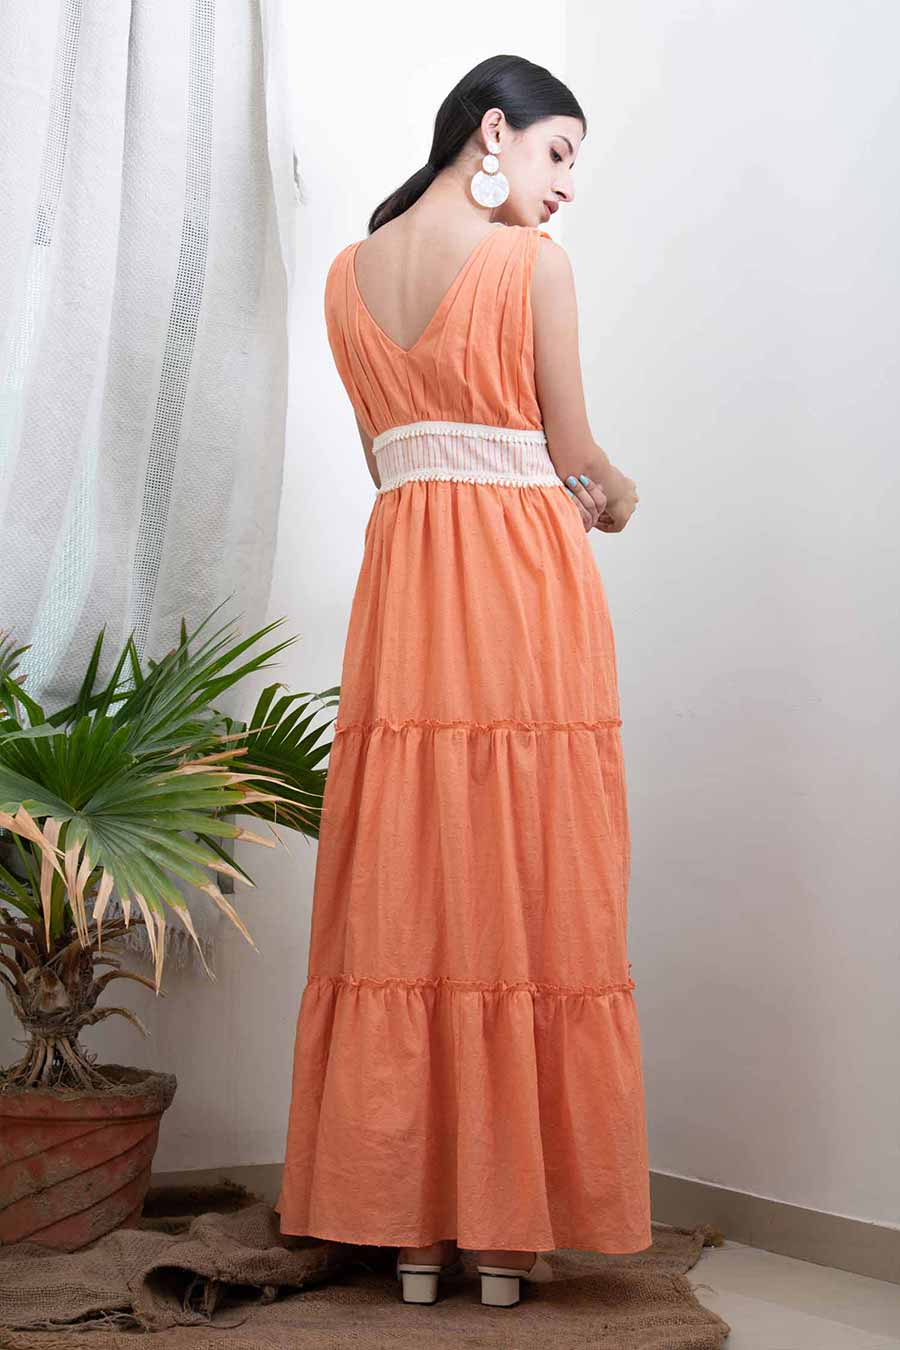 Peach Tiered Summer Dress